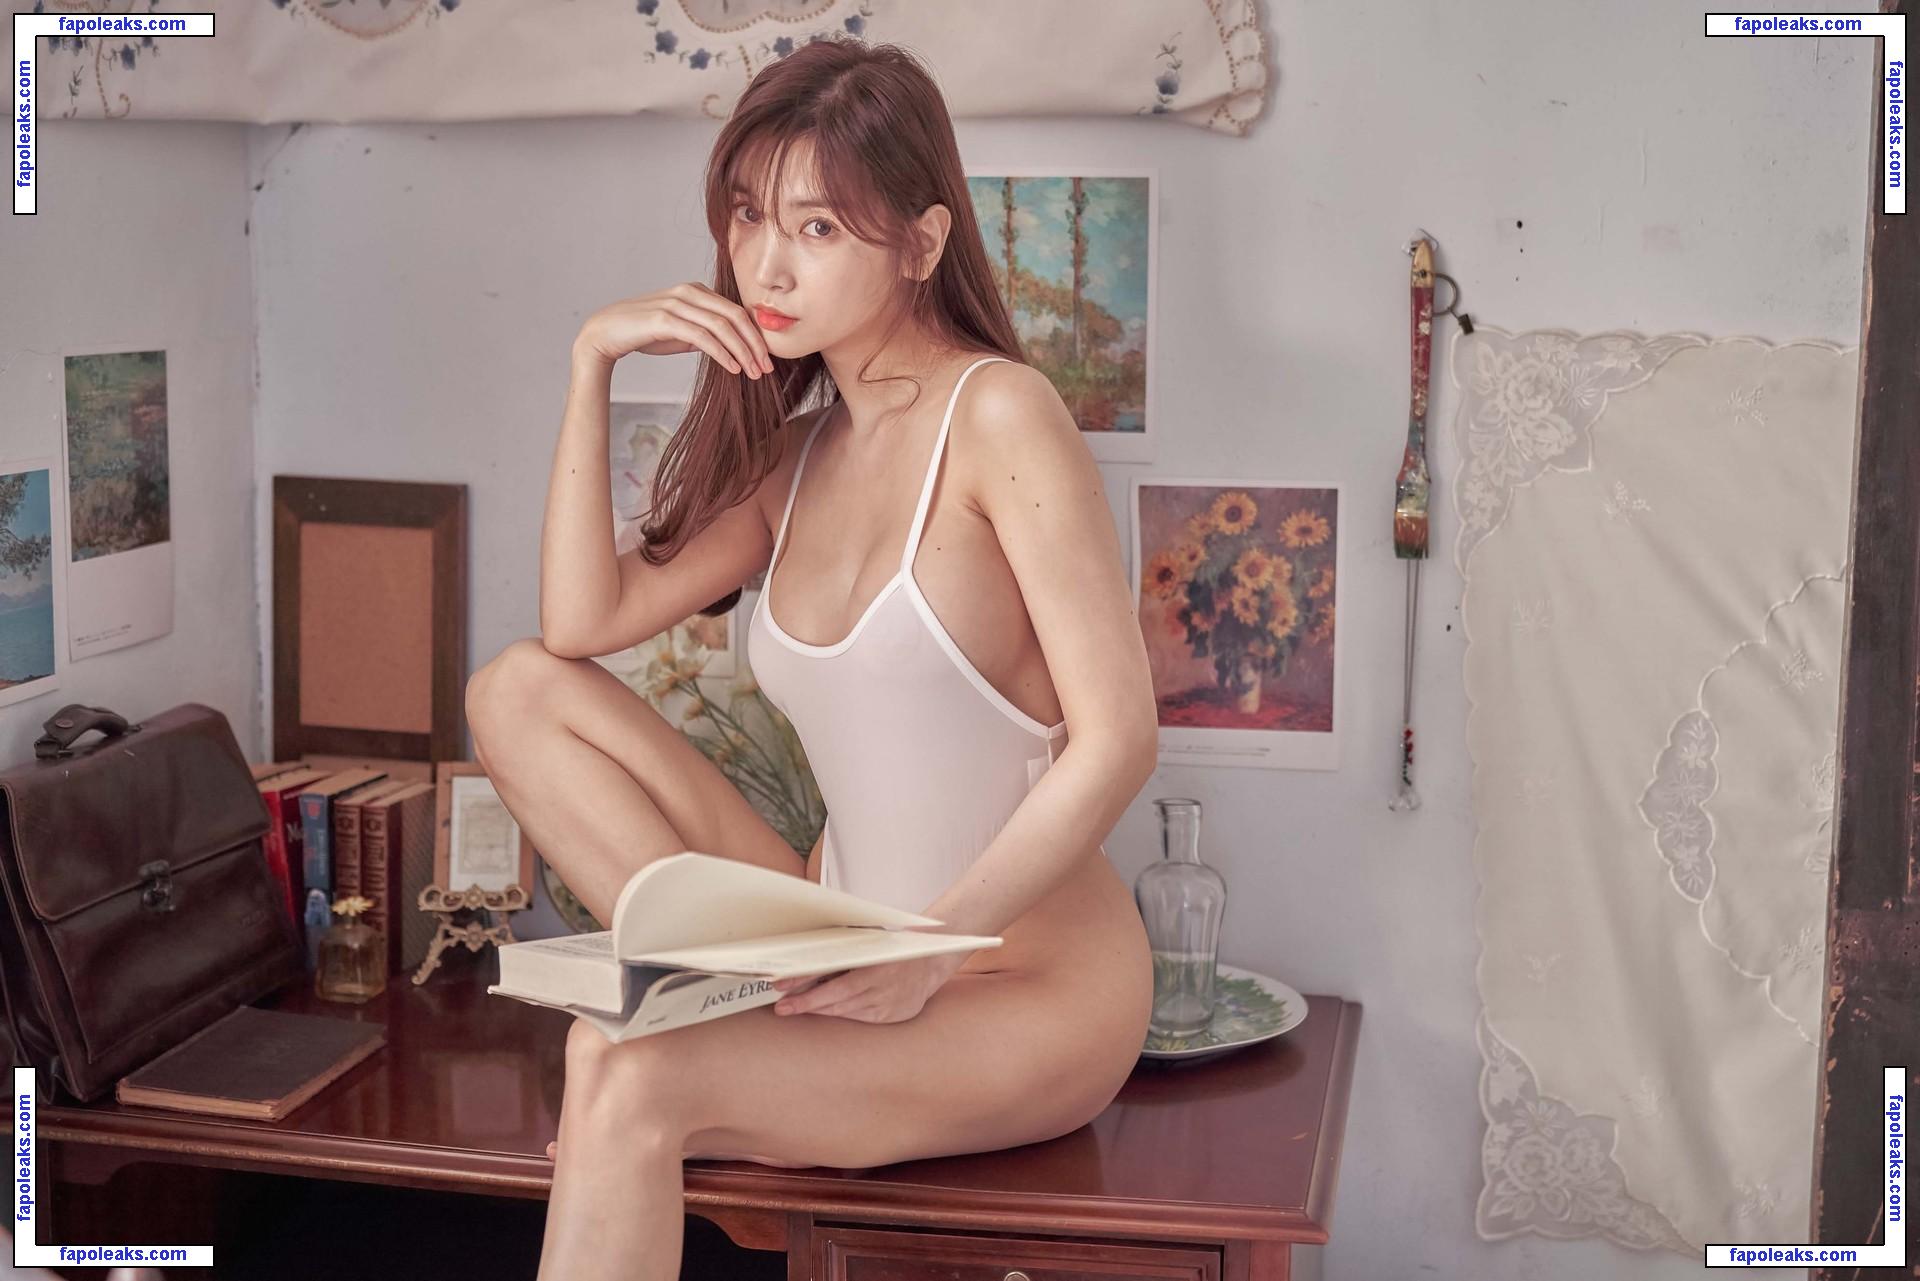 Lee Haein Leezy / leehaeinleezy nude photo #0017 from OnlyFans